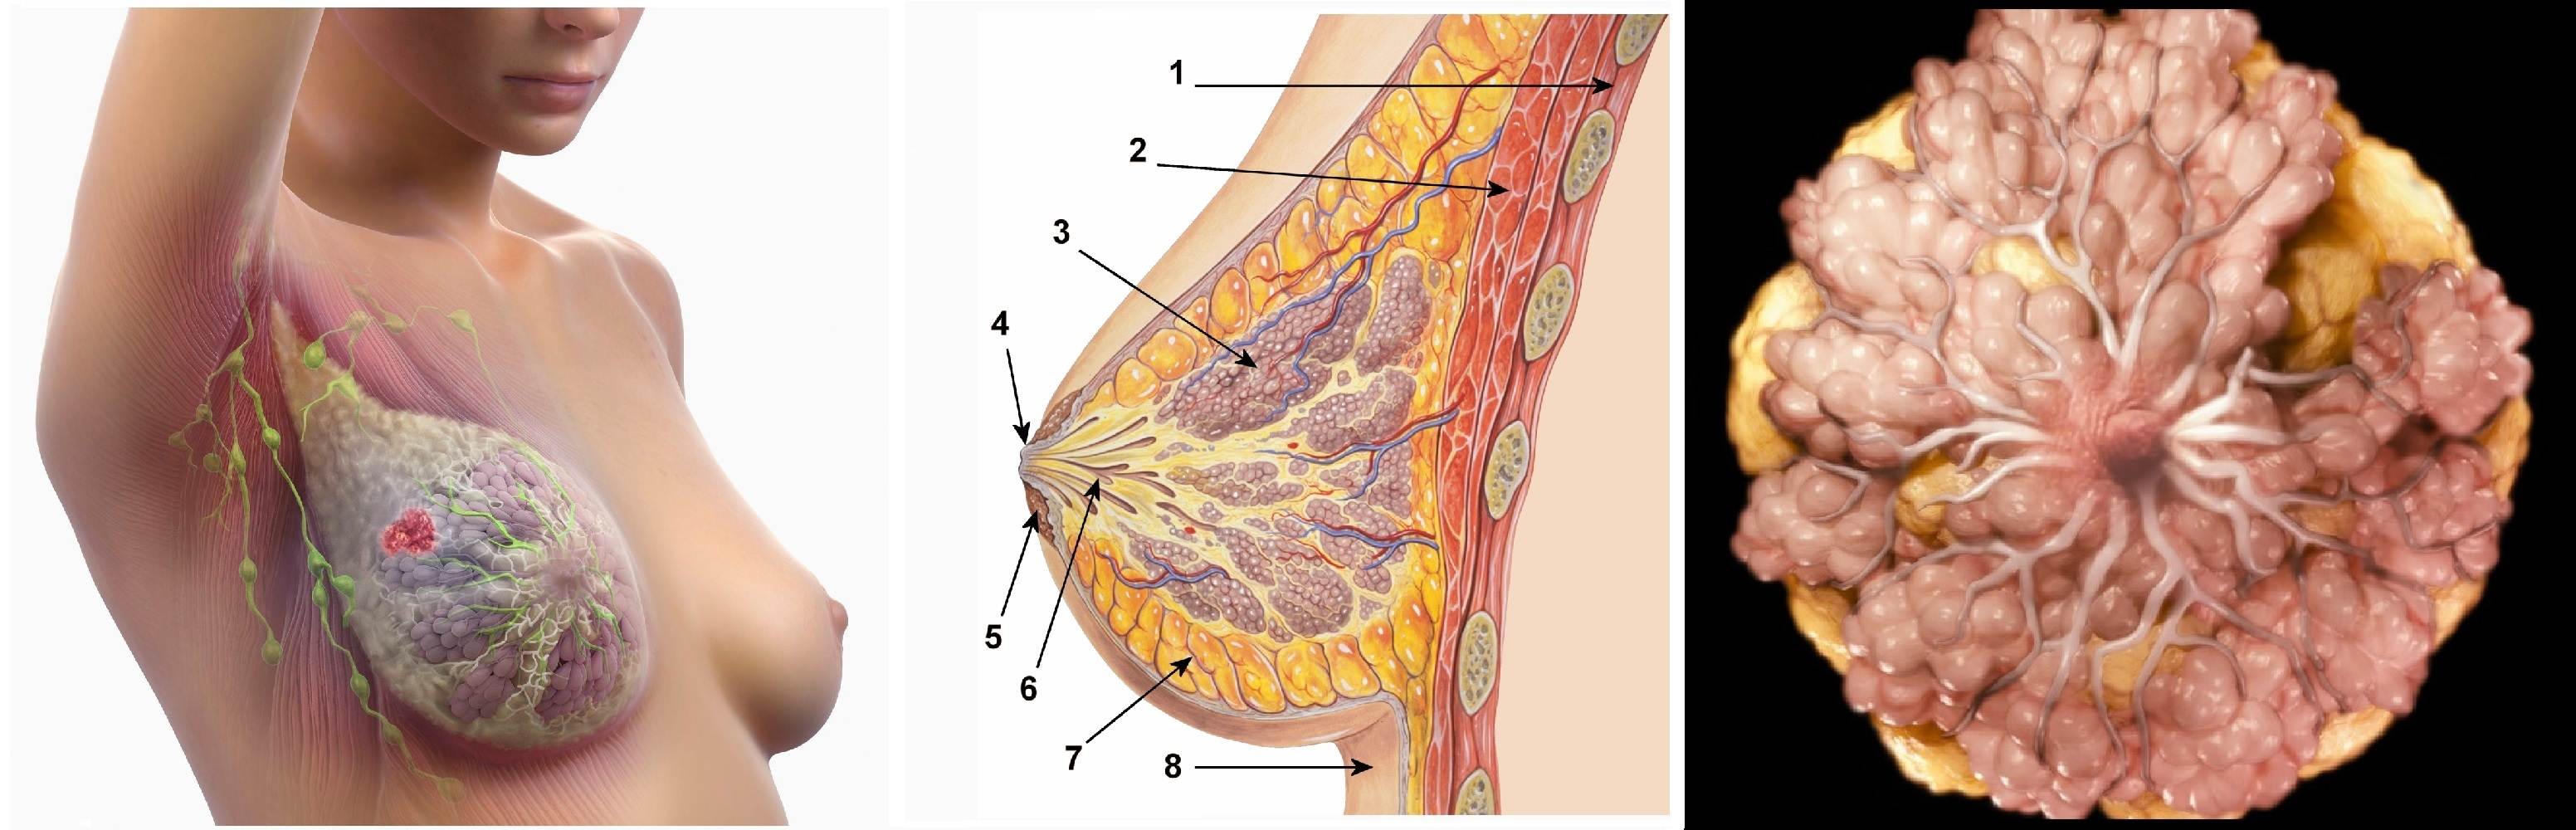 Как отличить боли при мастопатии и раке молочной железы